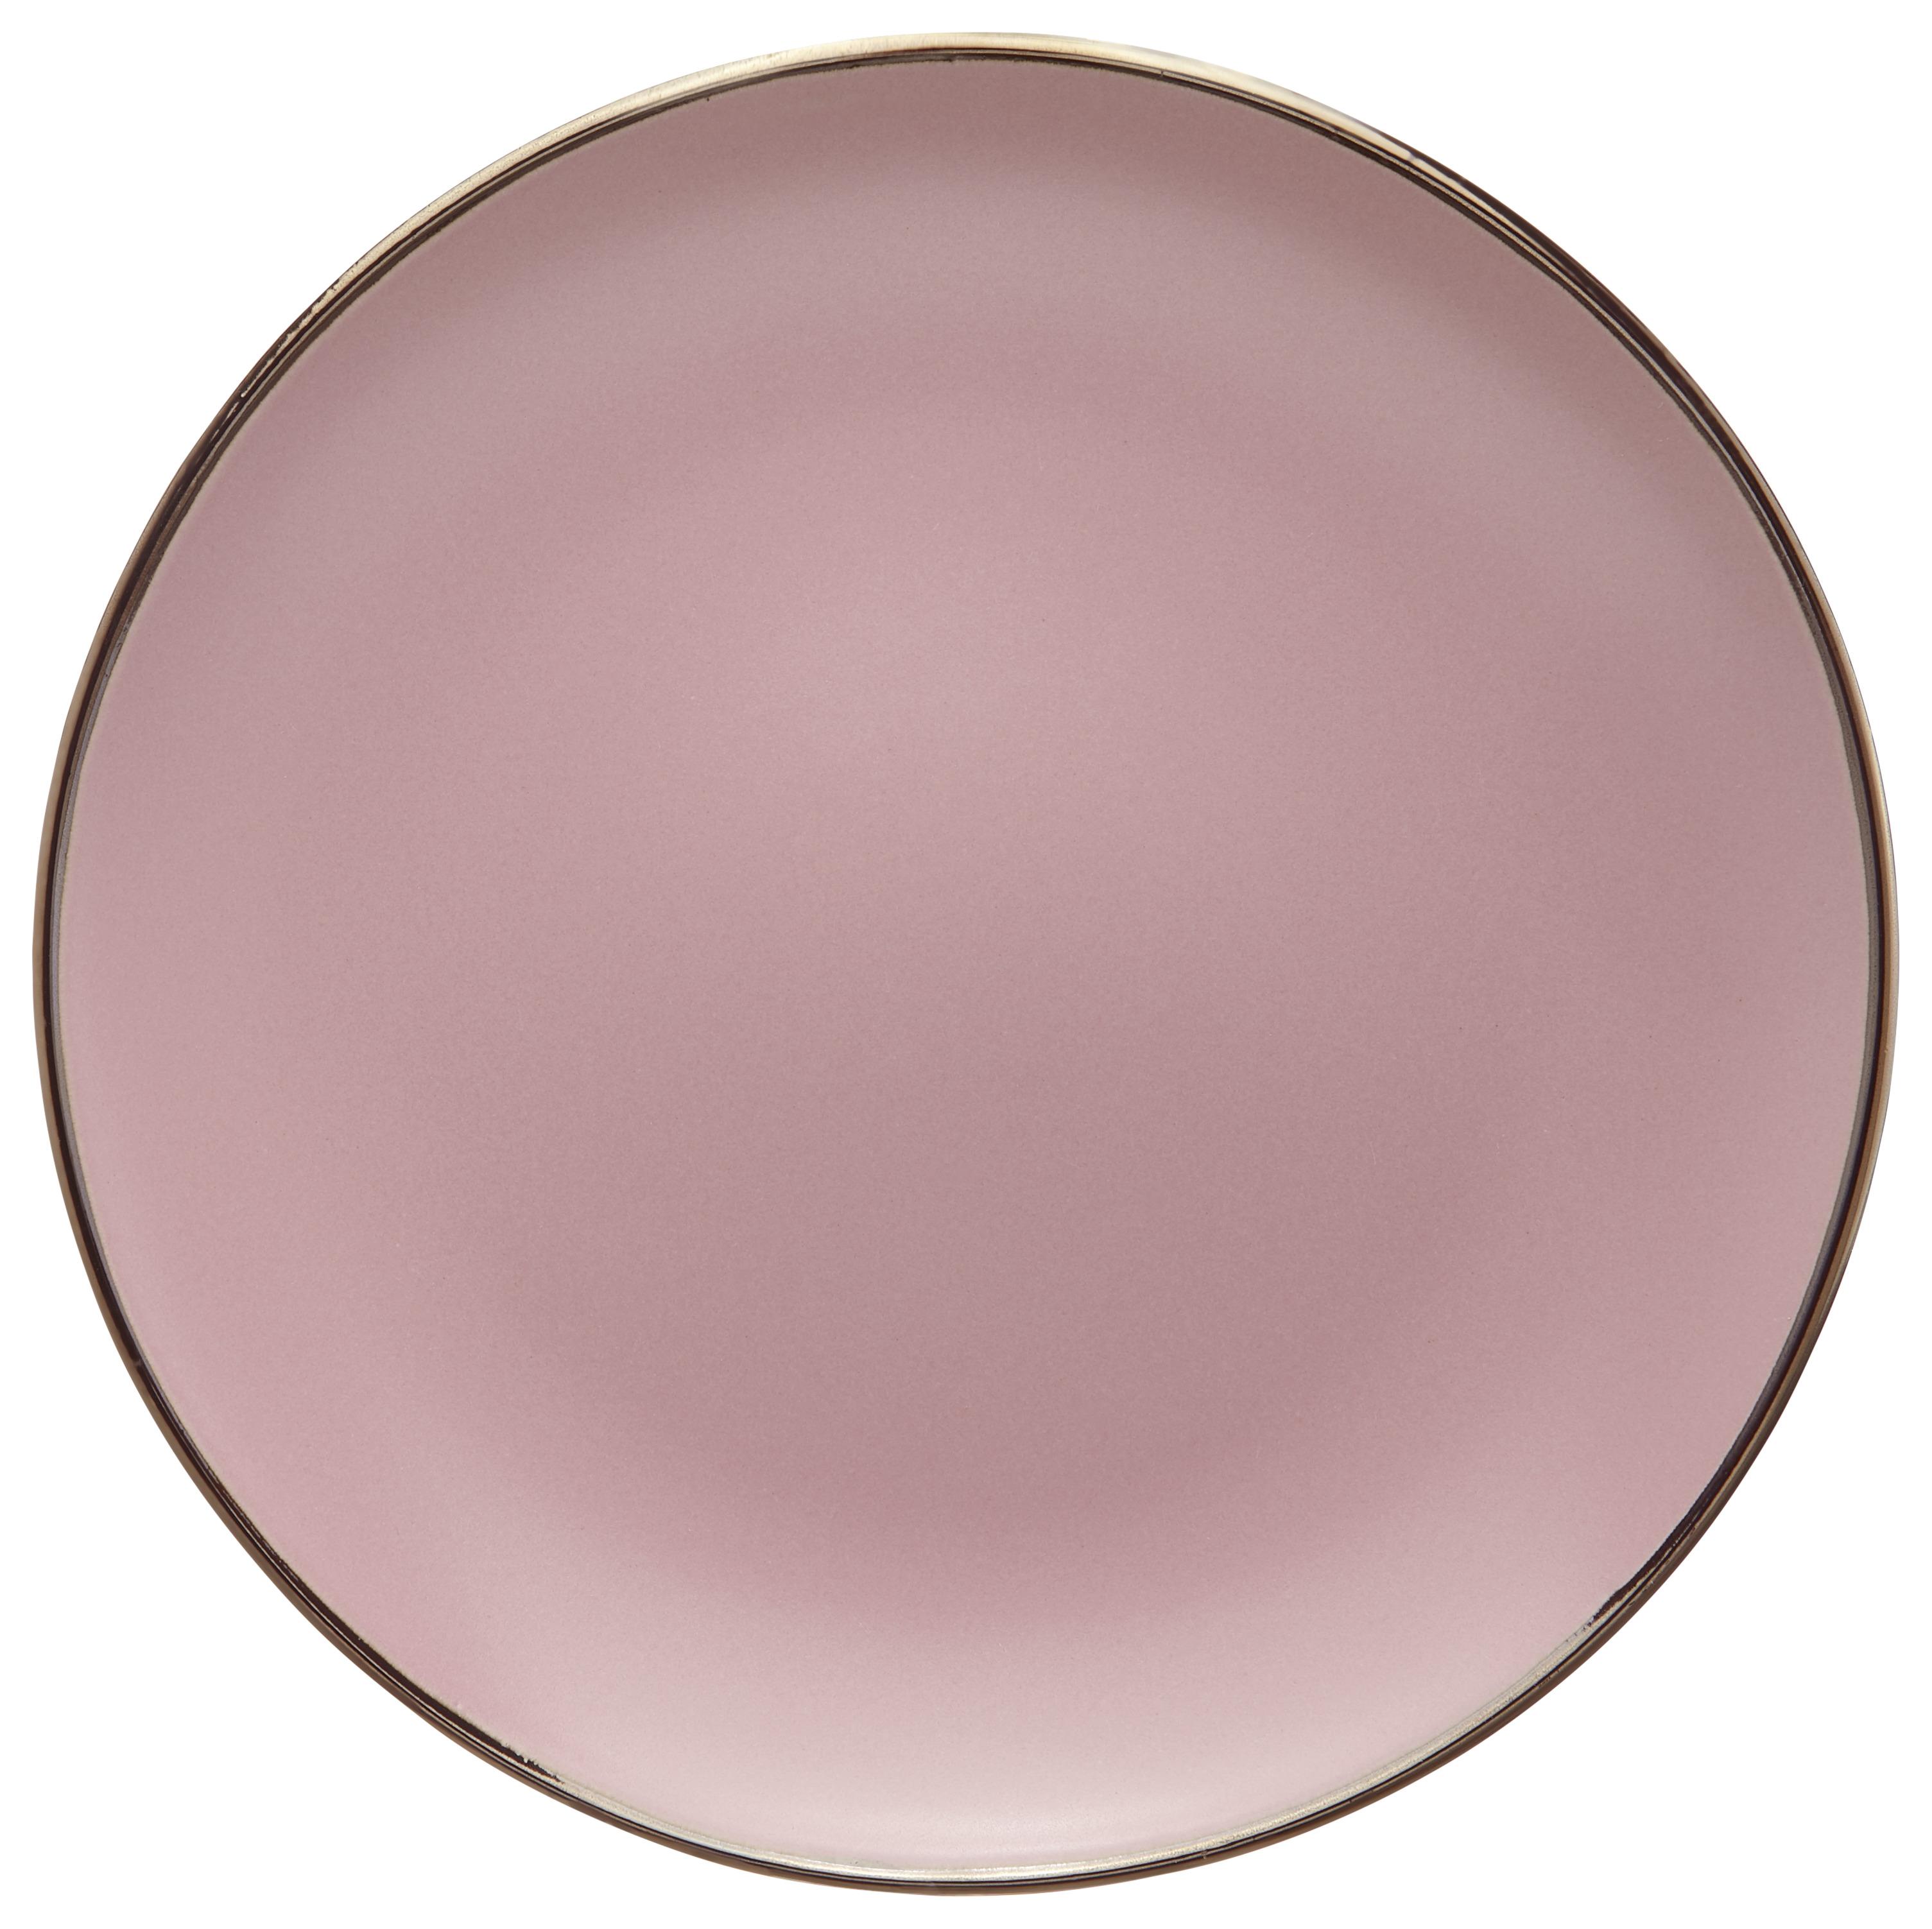 Frühstücksteller Maisie in diversen Farben - Rosa/Grau, MODERN, Keramik (20.4/2.4cm)